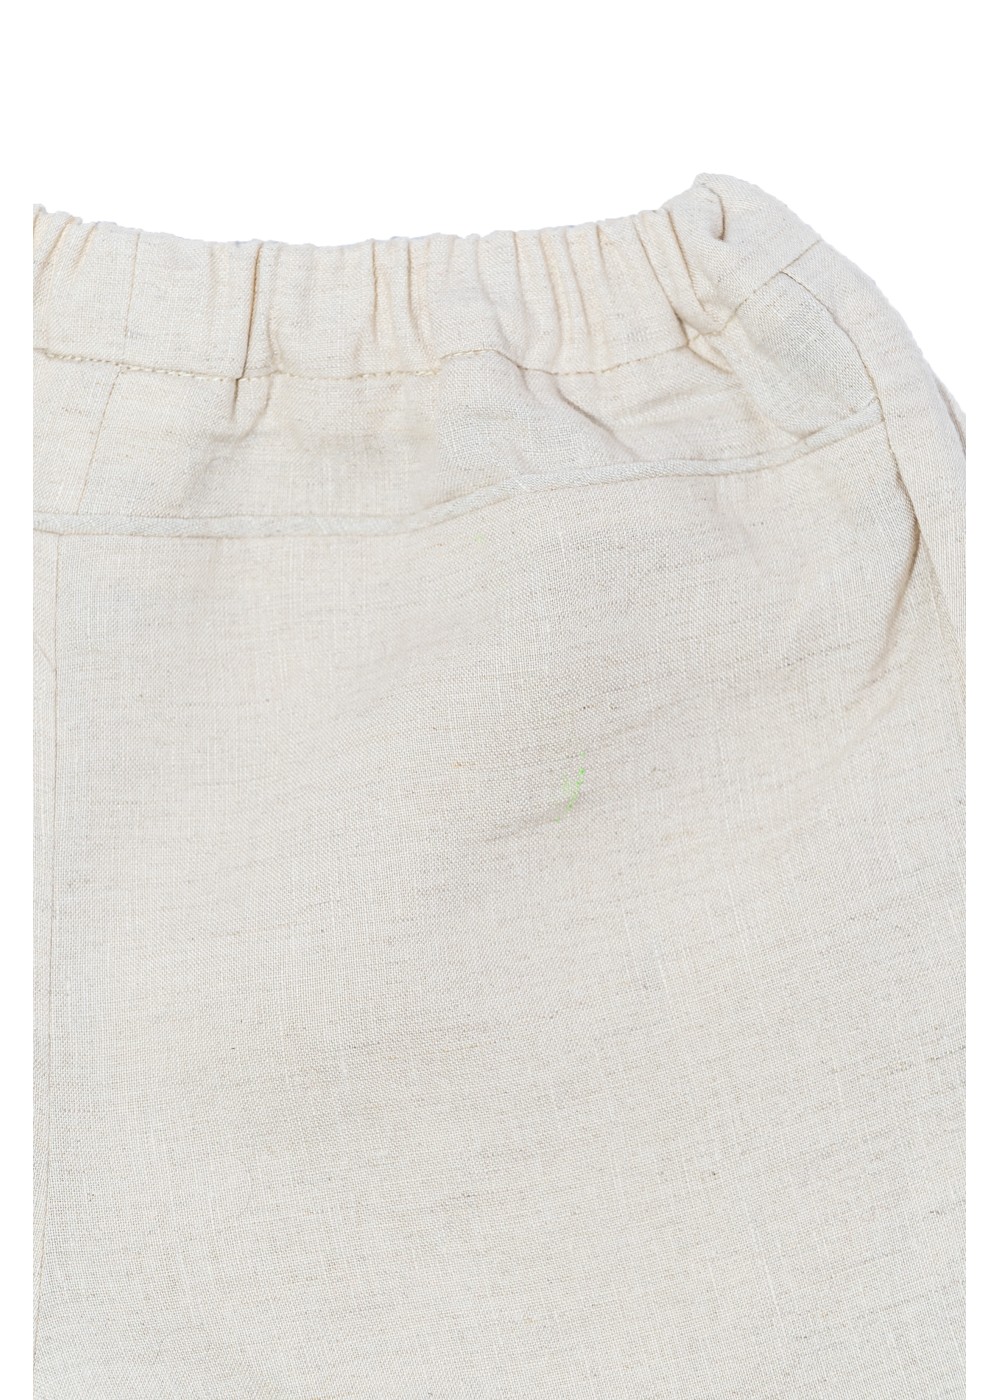 ARI Shorts, linen shorts, elastic waistband, beige